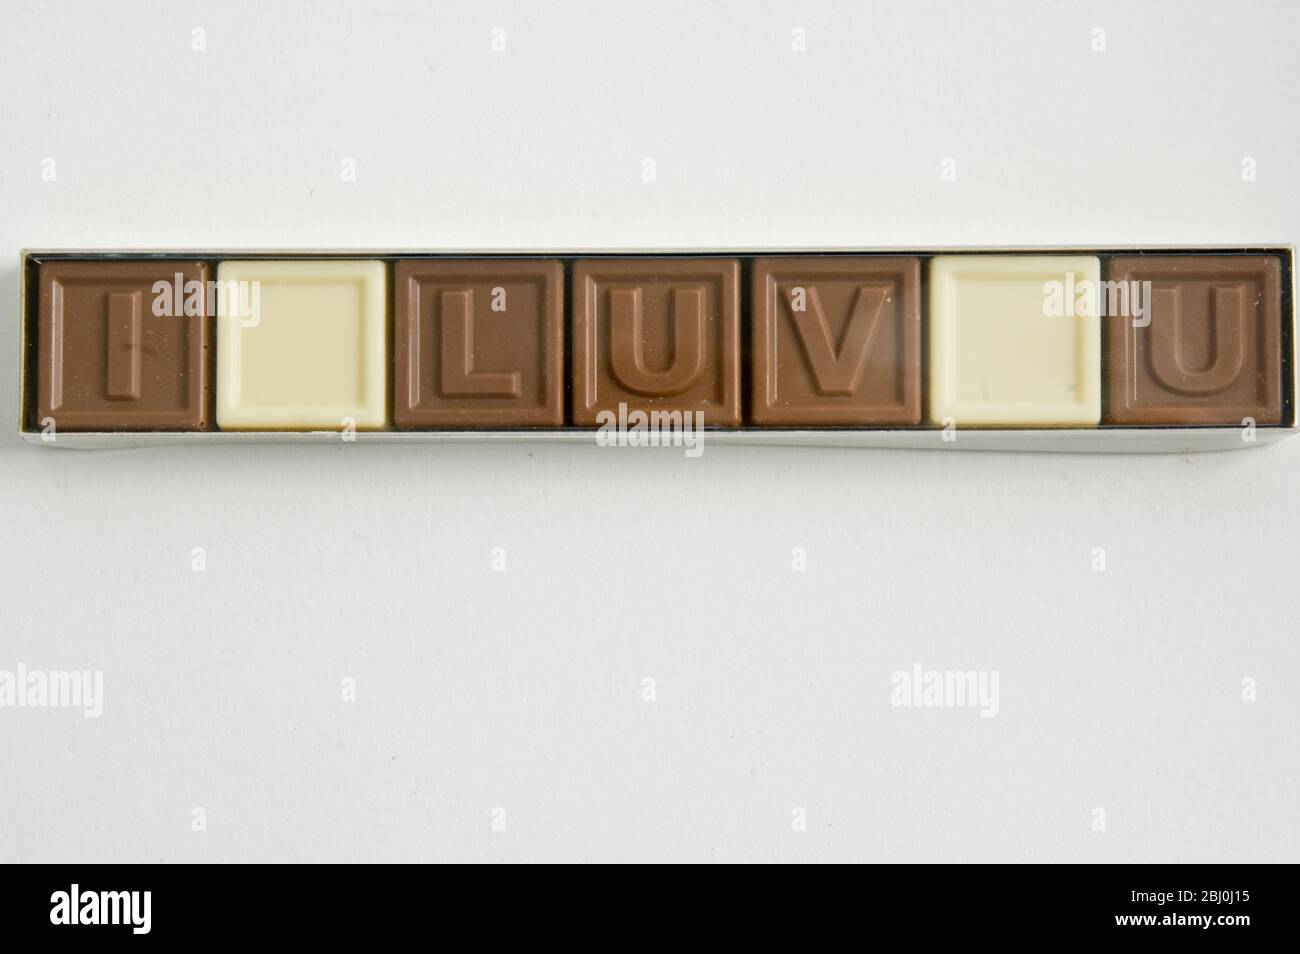 Schokolade Buchstaben mit der Aufschrift "I LOVE YOU" in Cellophan Box als Valentinstag Geschenk - Stockfoto